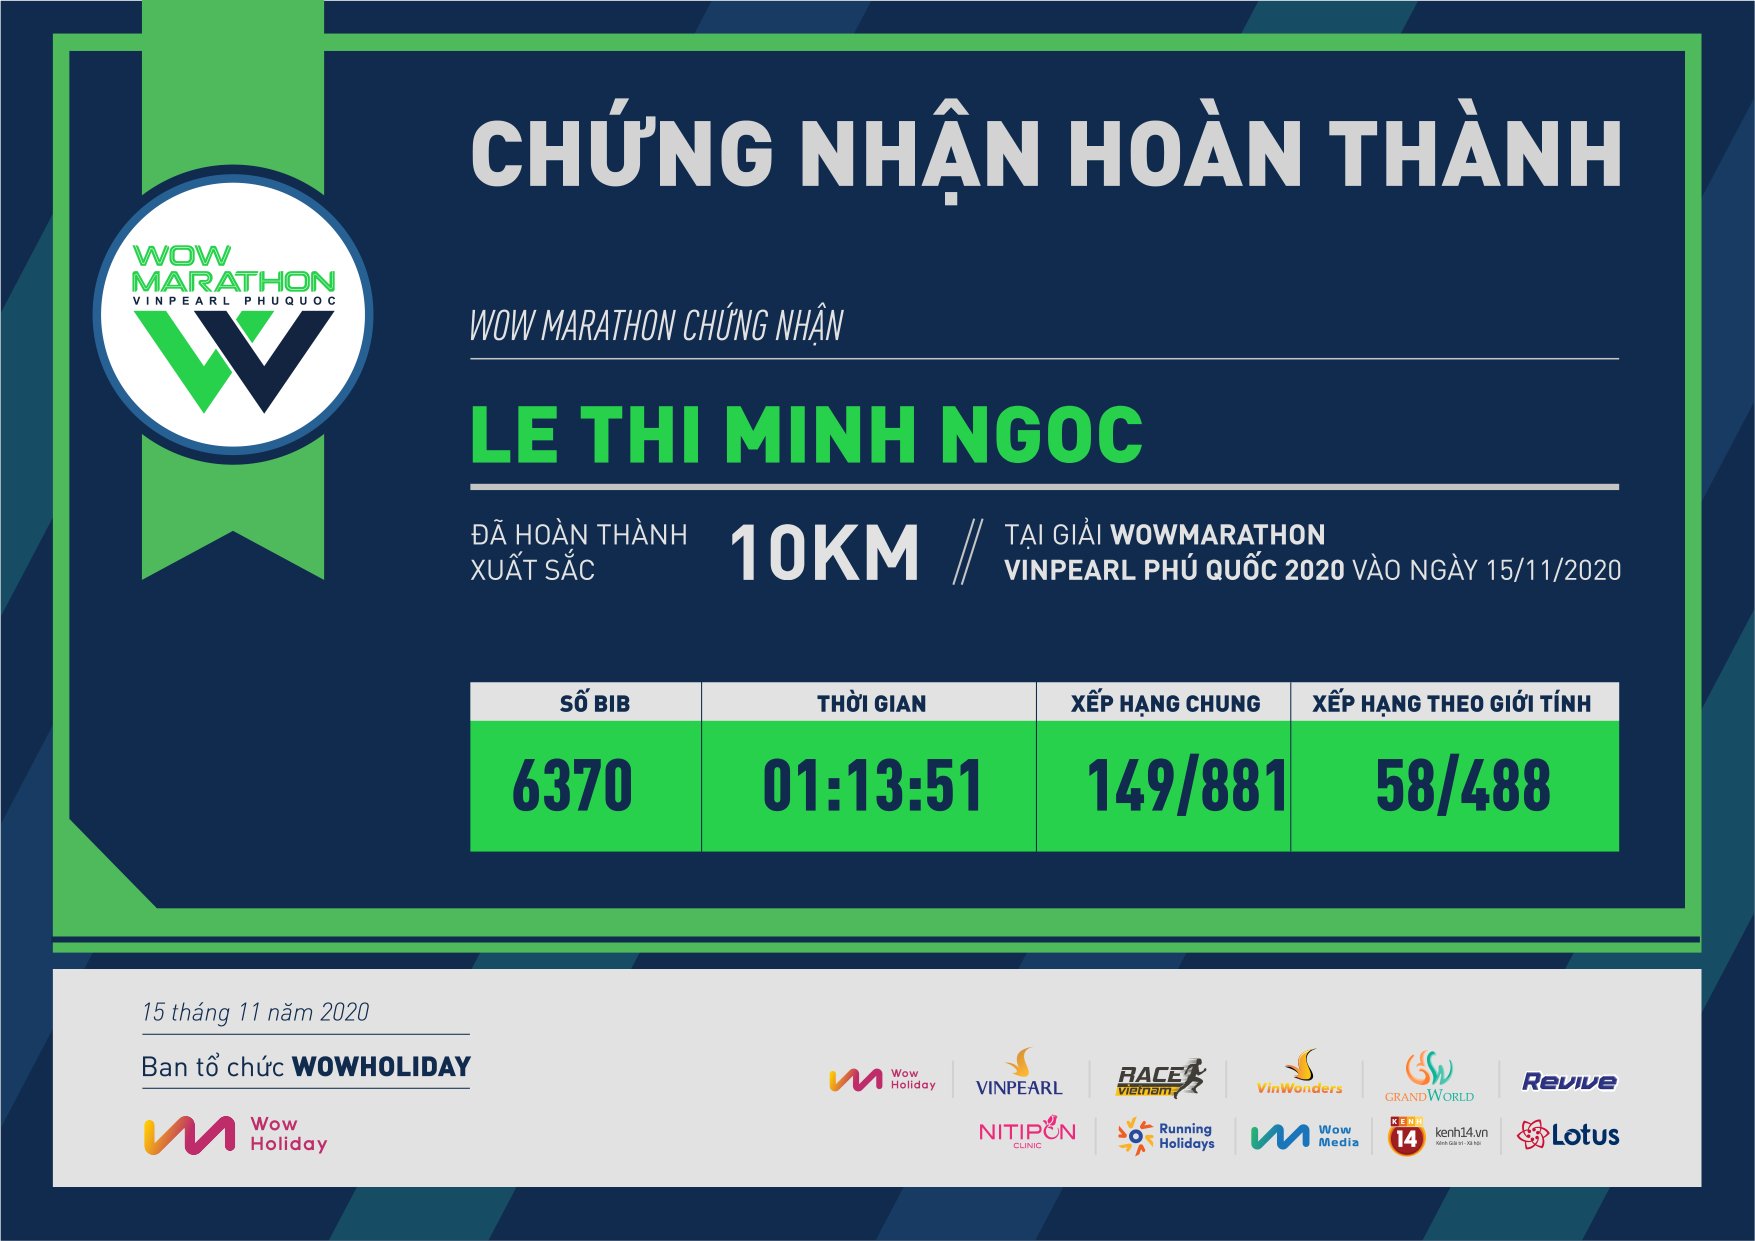 6370 - Le Thi Minh Ngoc